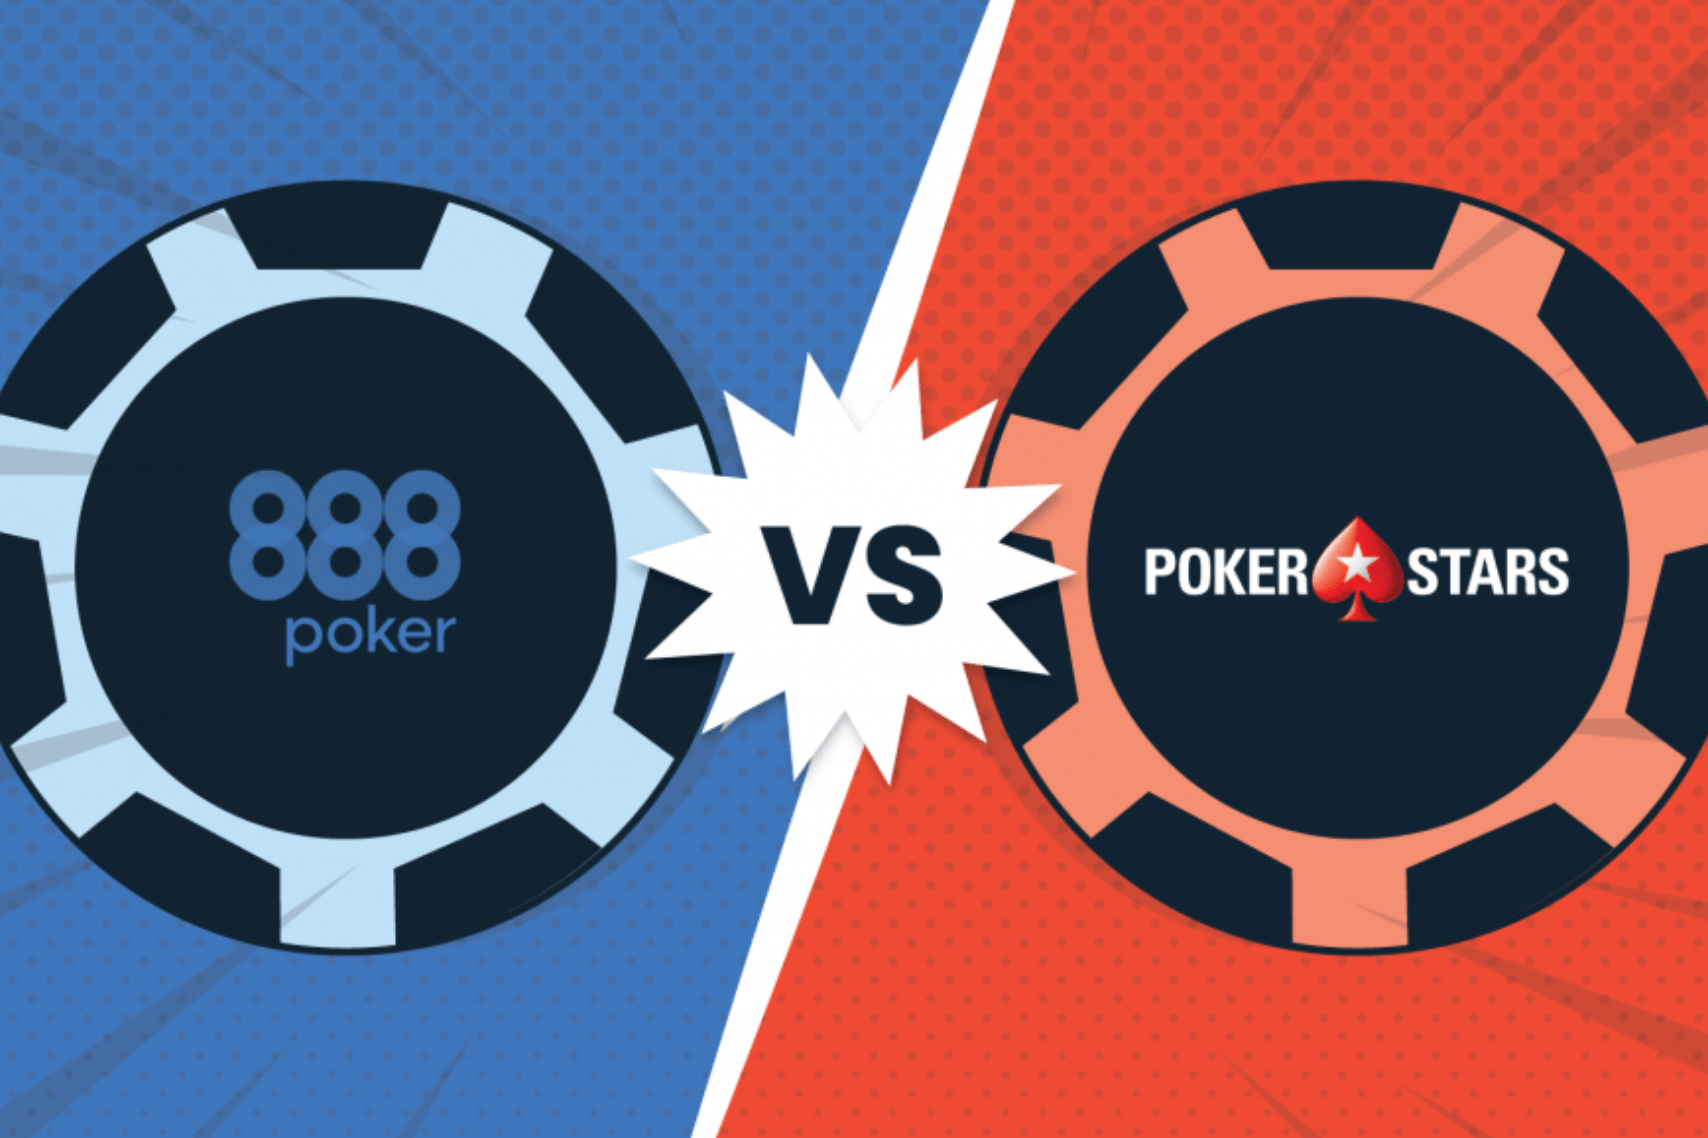 888poker vs Pokerstars ¿Cuál es mejor? Explicación completa